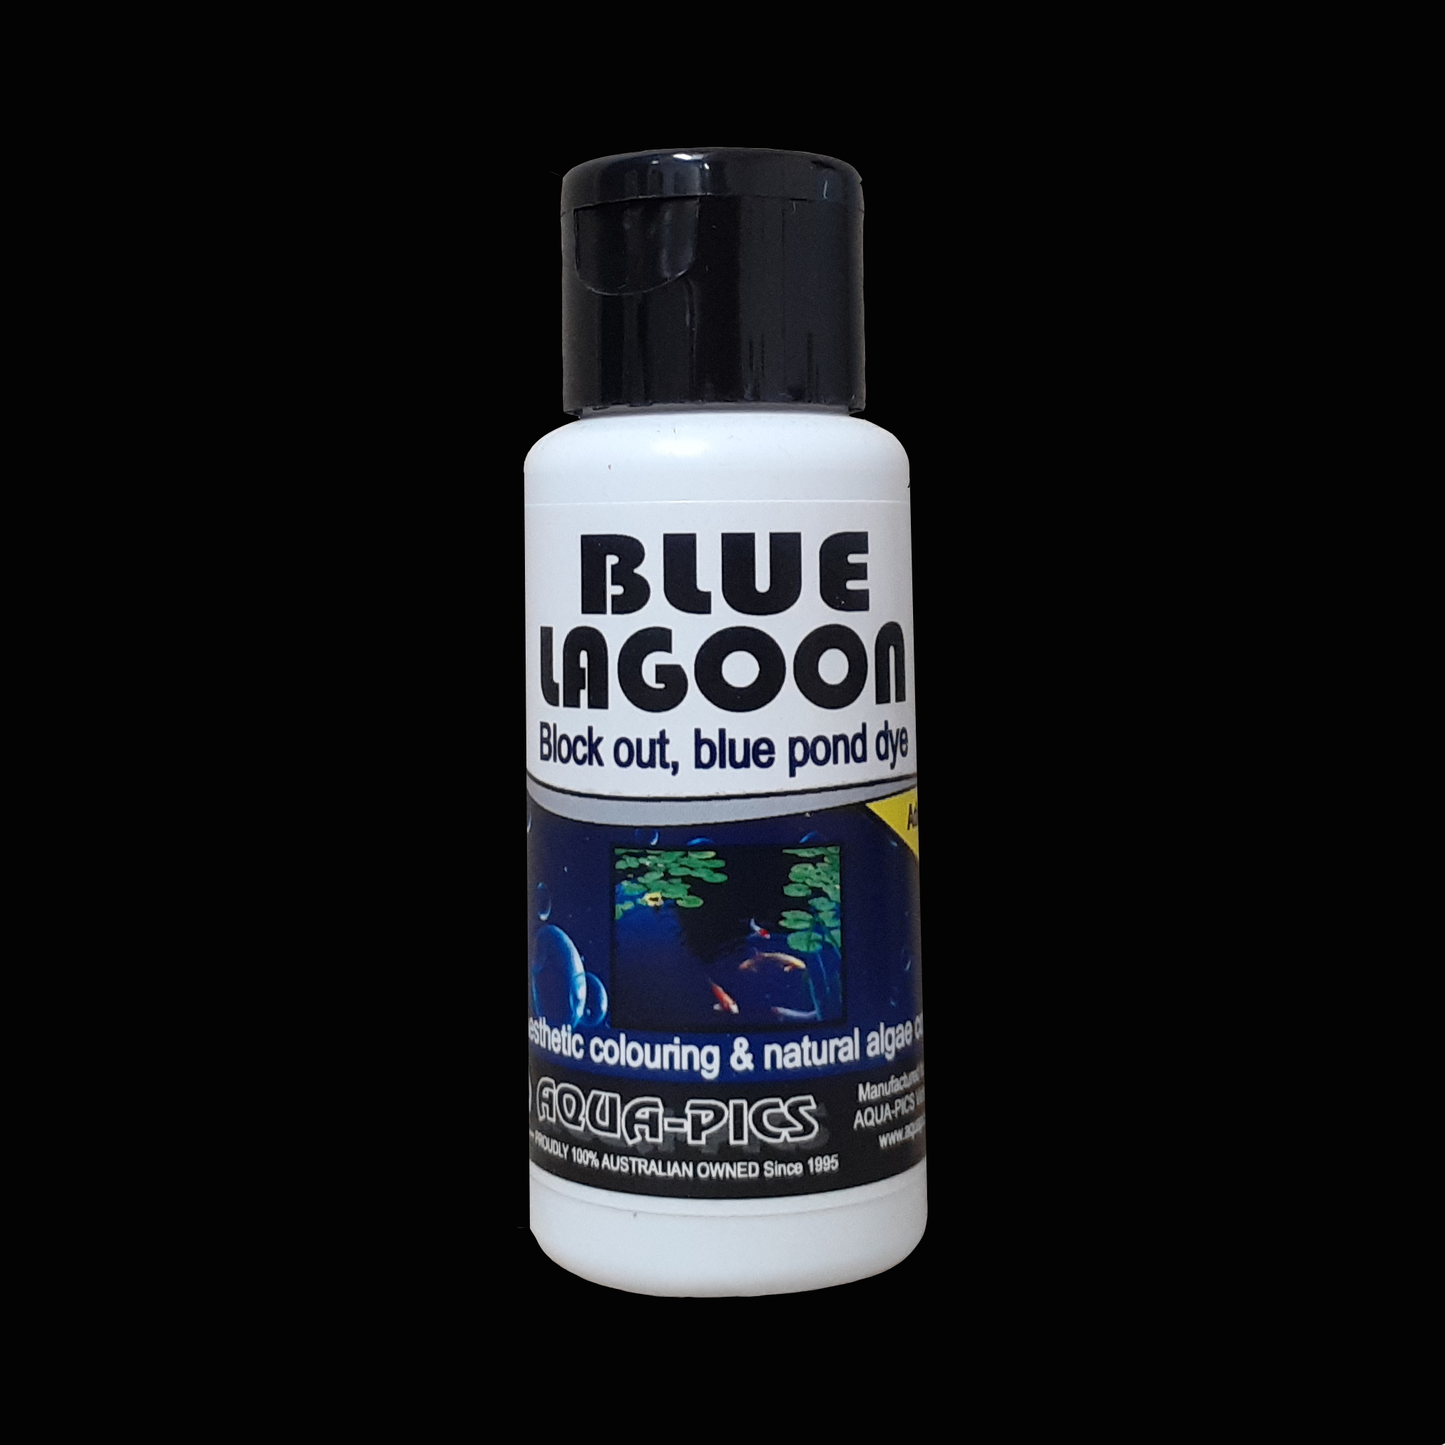 Blue Lagoon Block out blue pond dye 50ml